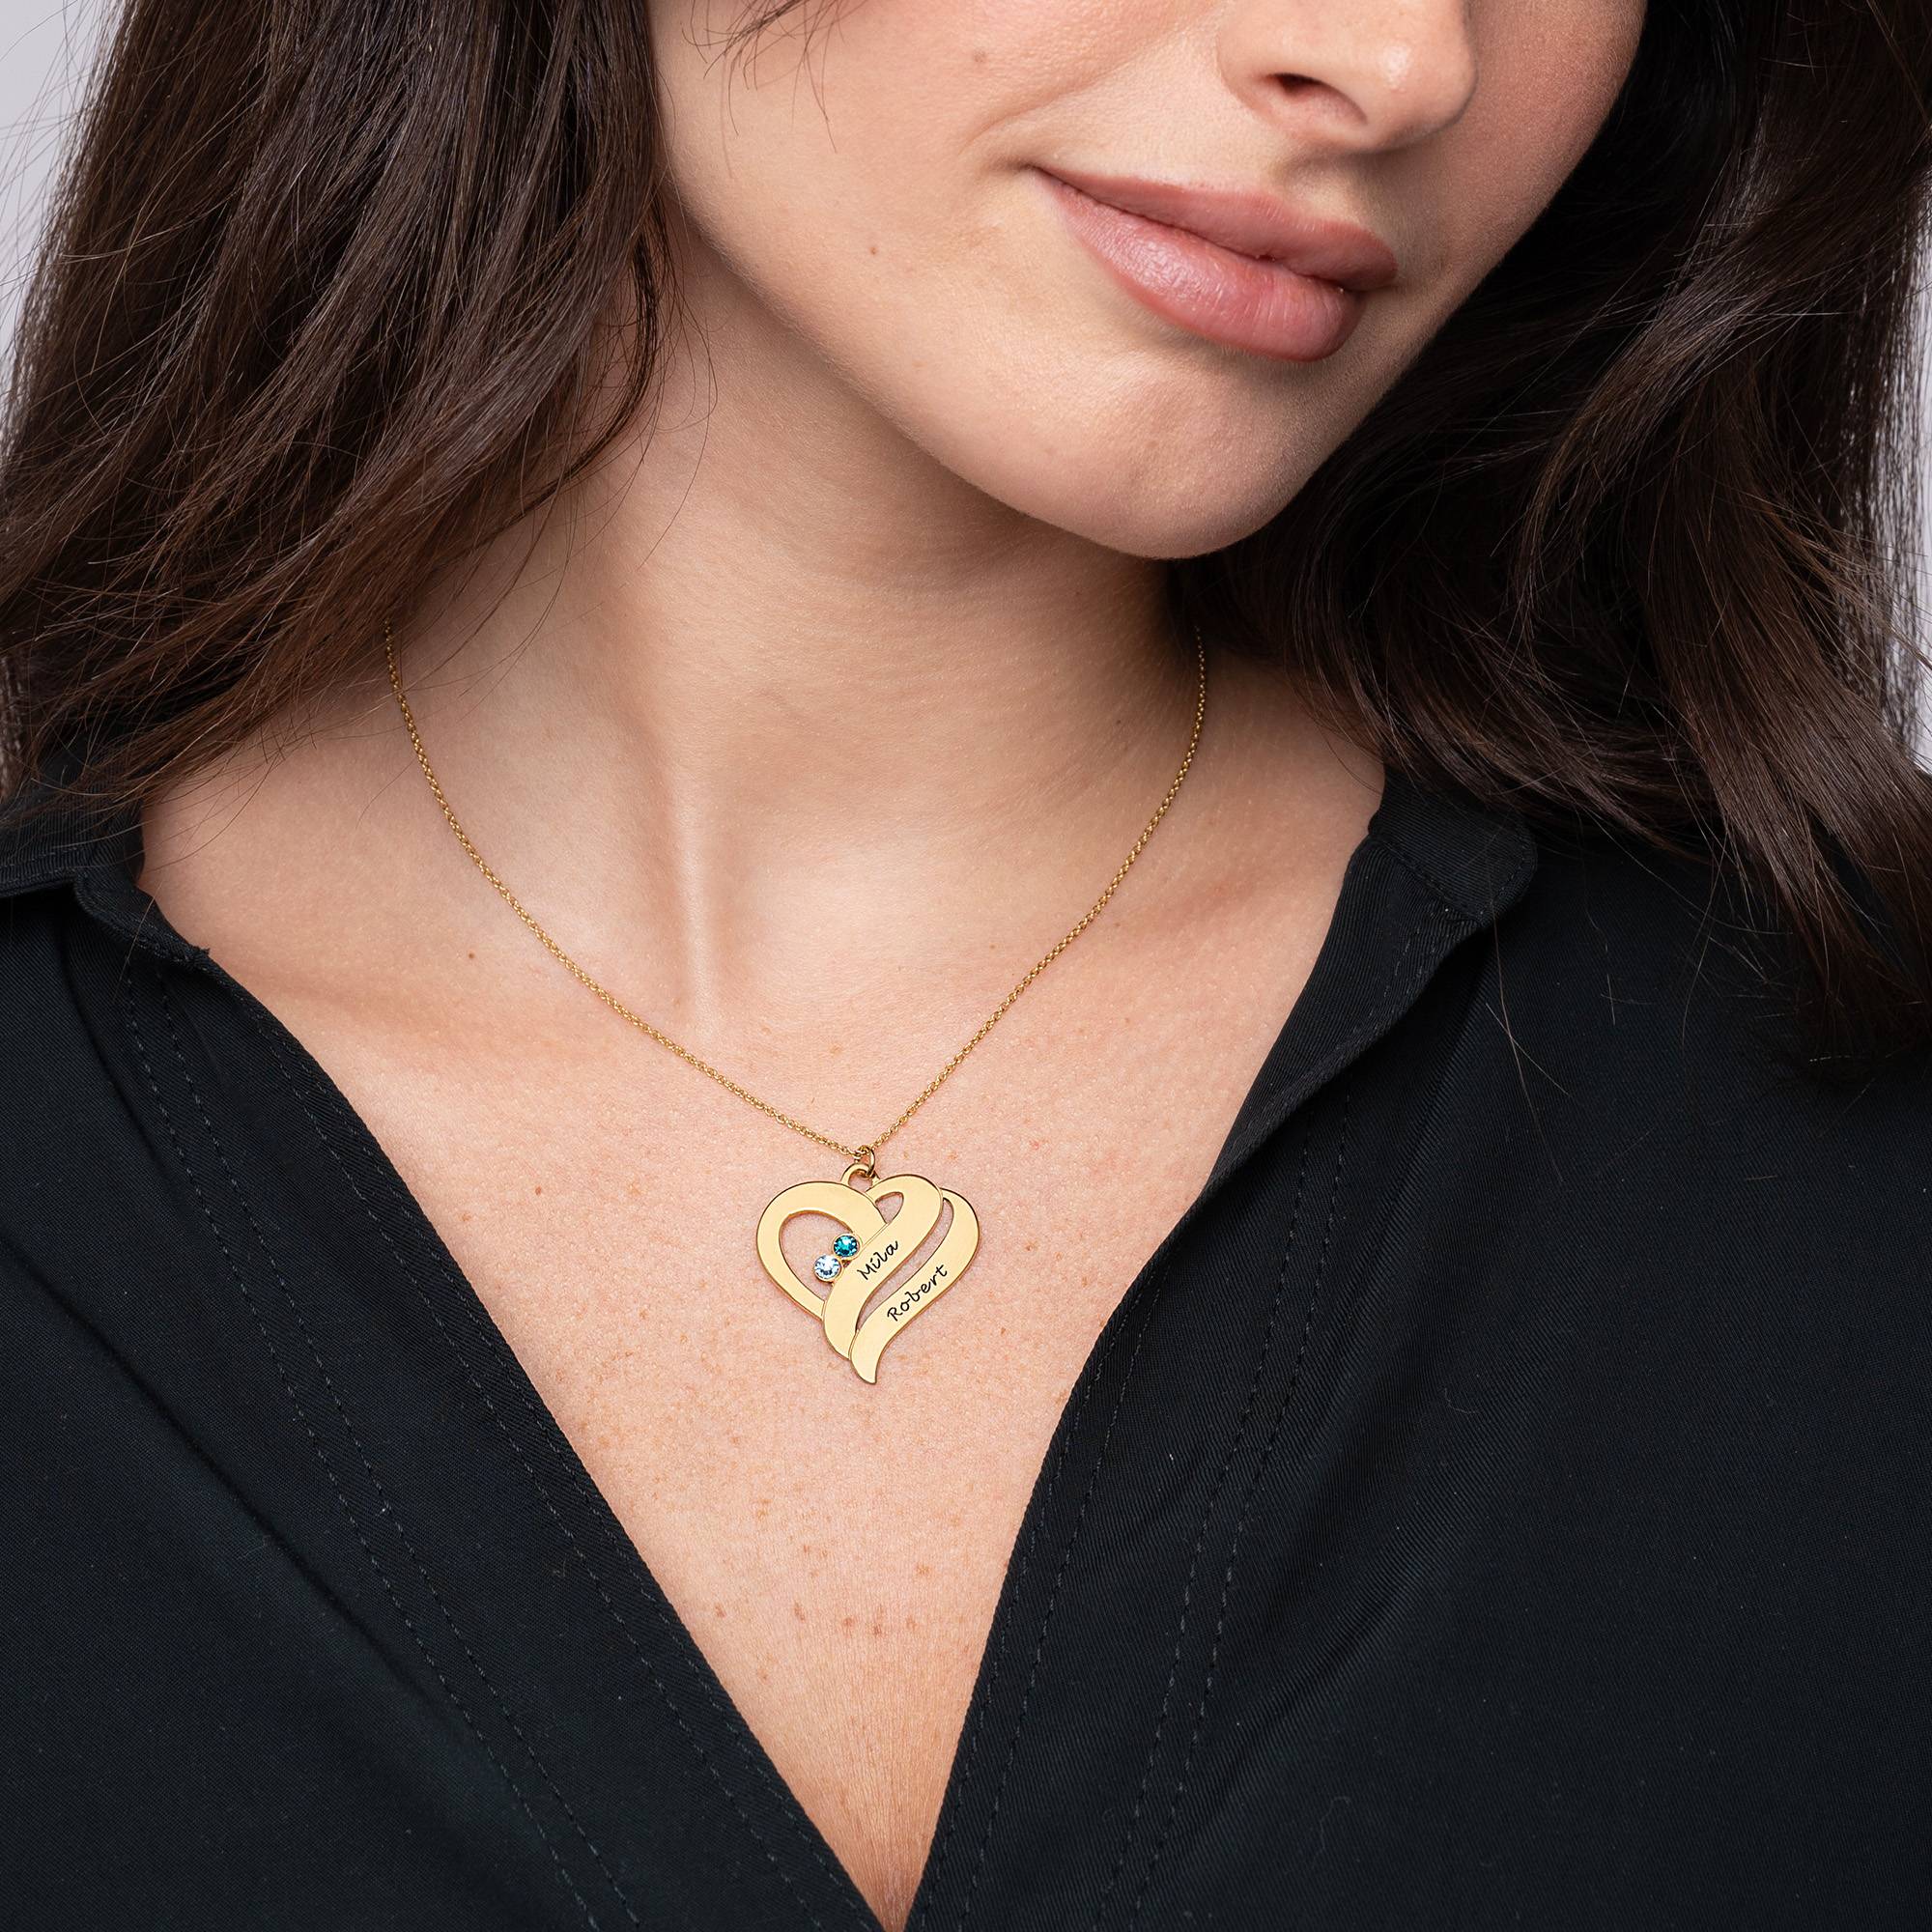 Zwei Herzen für immer vereint - Kette mit Geburtssteinen – 750er vergoldetes Silber-2 Produktfoto